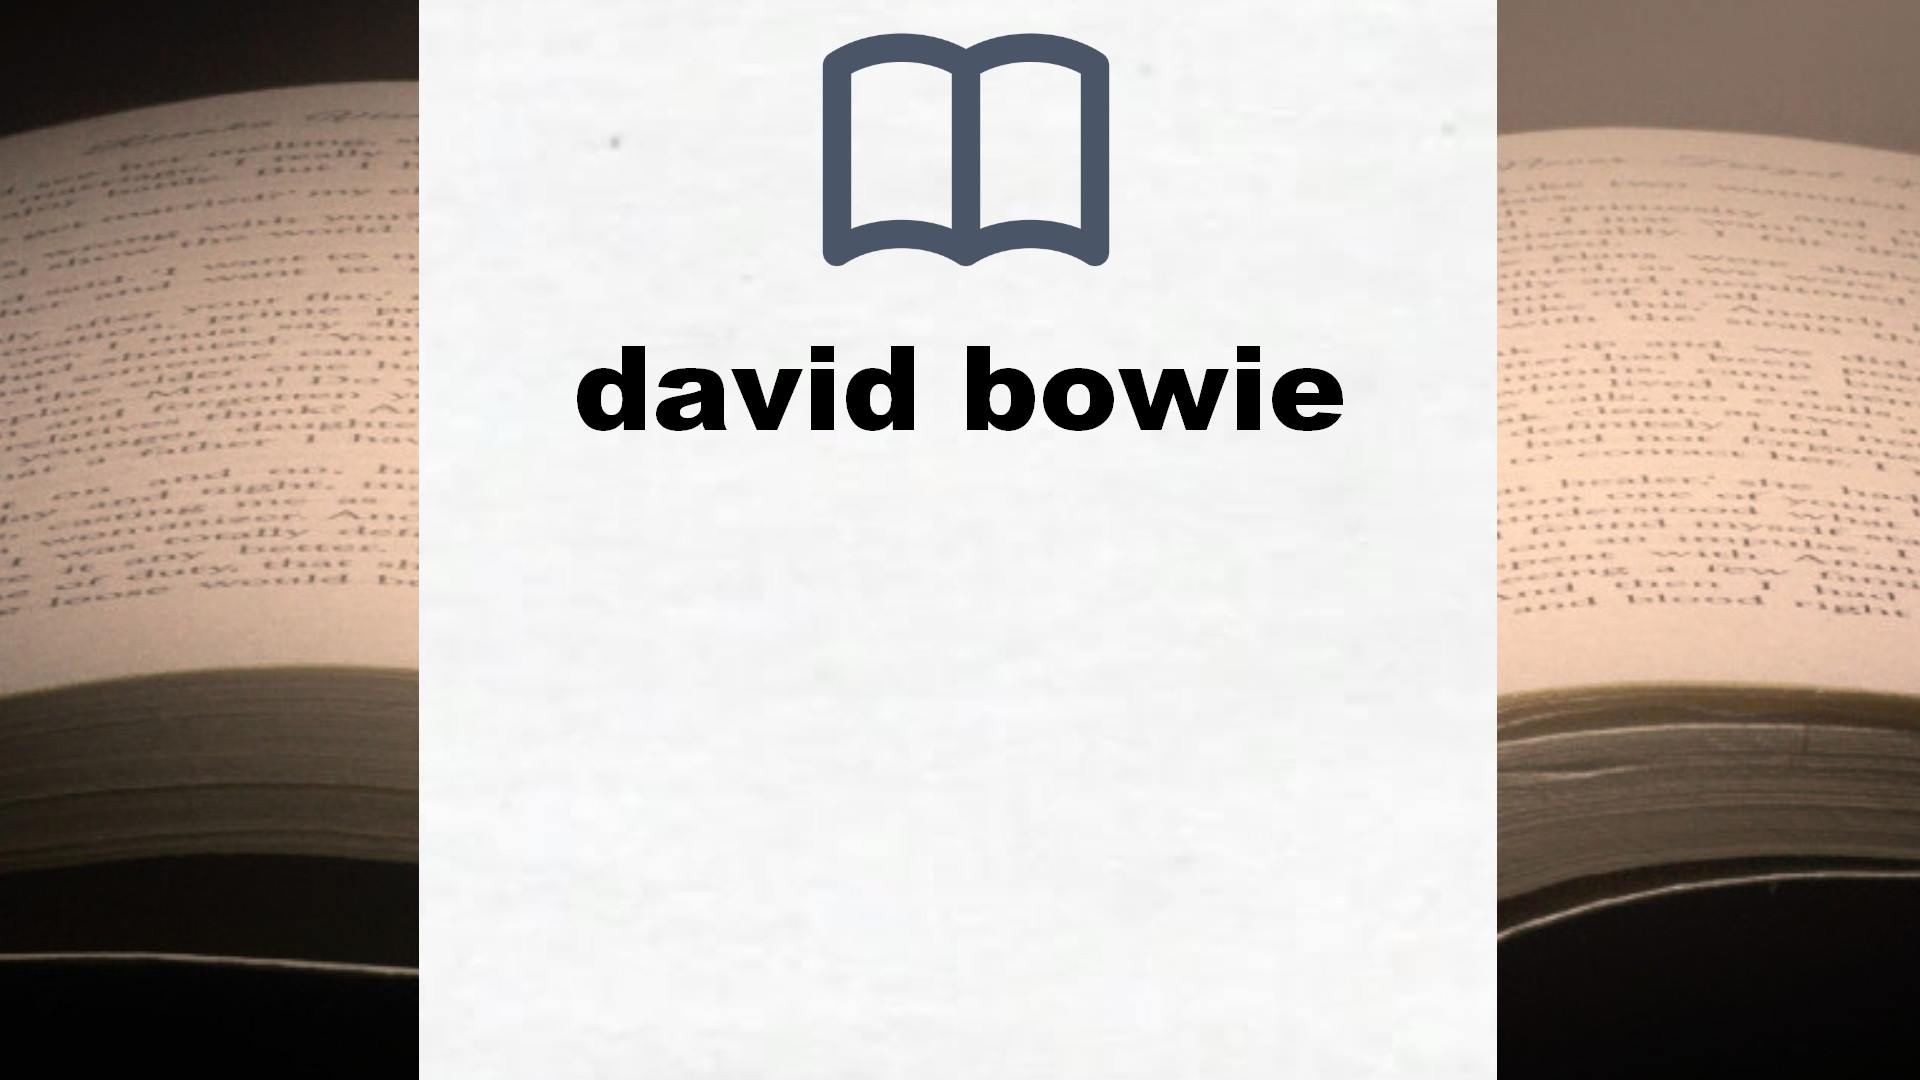 Libros sobre david bowie